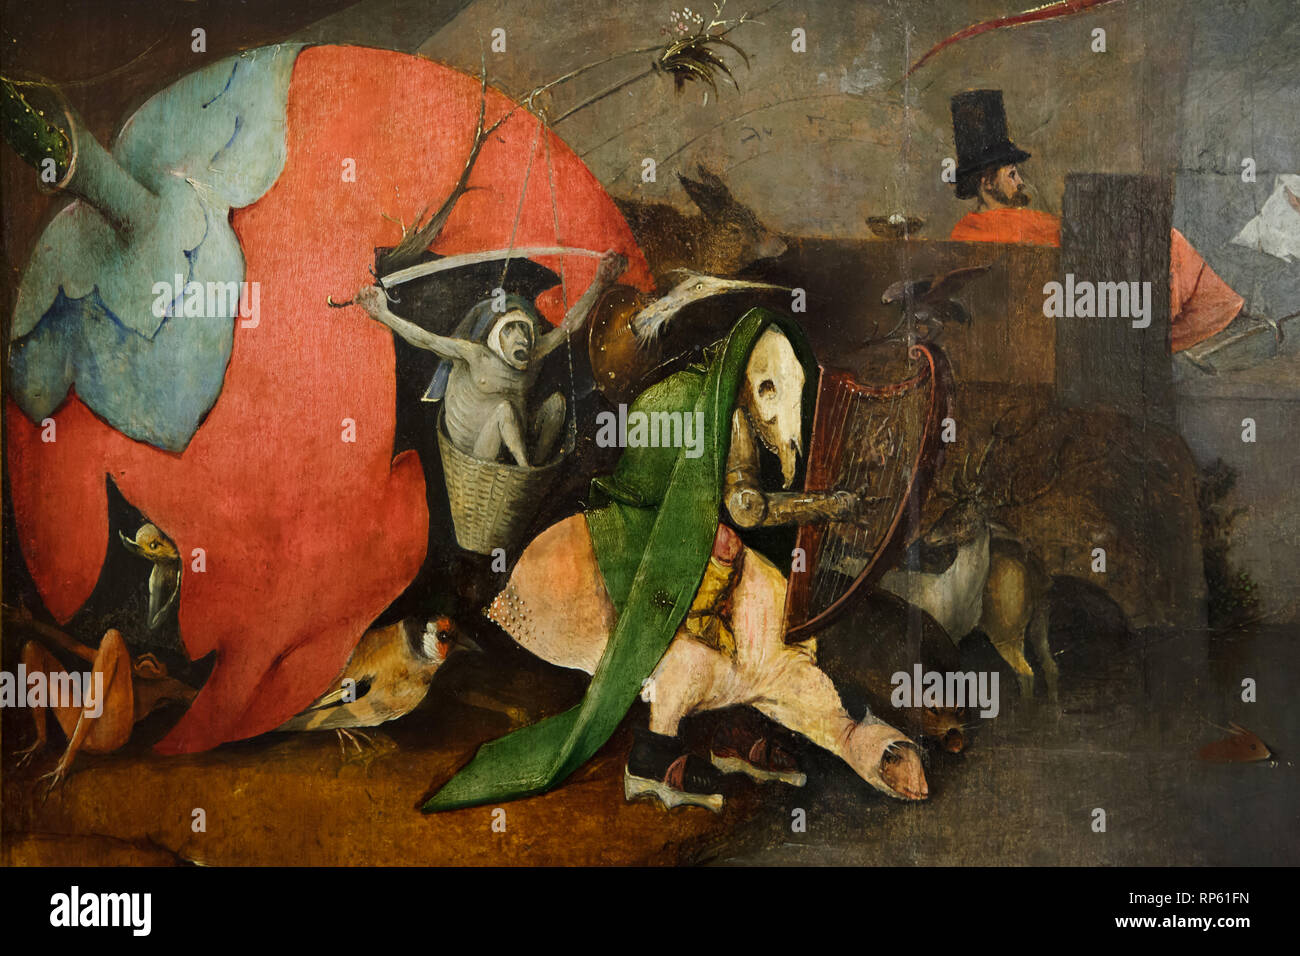 Detail der Altar Triptychon 'Versuchung des Heiligen Antonius" von der Niederländischen Renaissance Maler Hieronymus Bosch (1490-1500) in das Nationalmuseum für Alte Kunst (Museu Nacional de Arte Antiga) in Lissabon, Portugal. Stockfoto